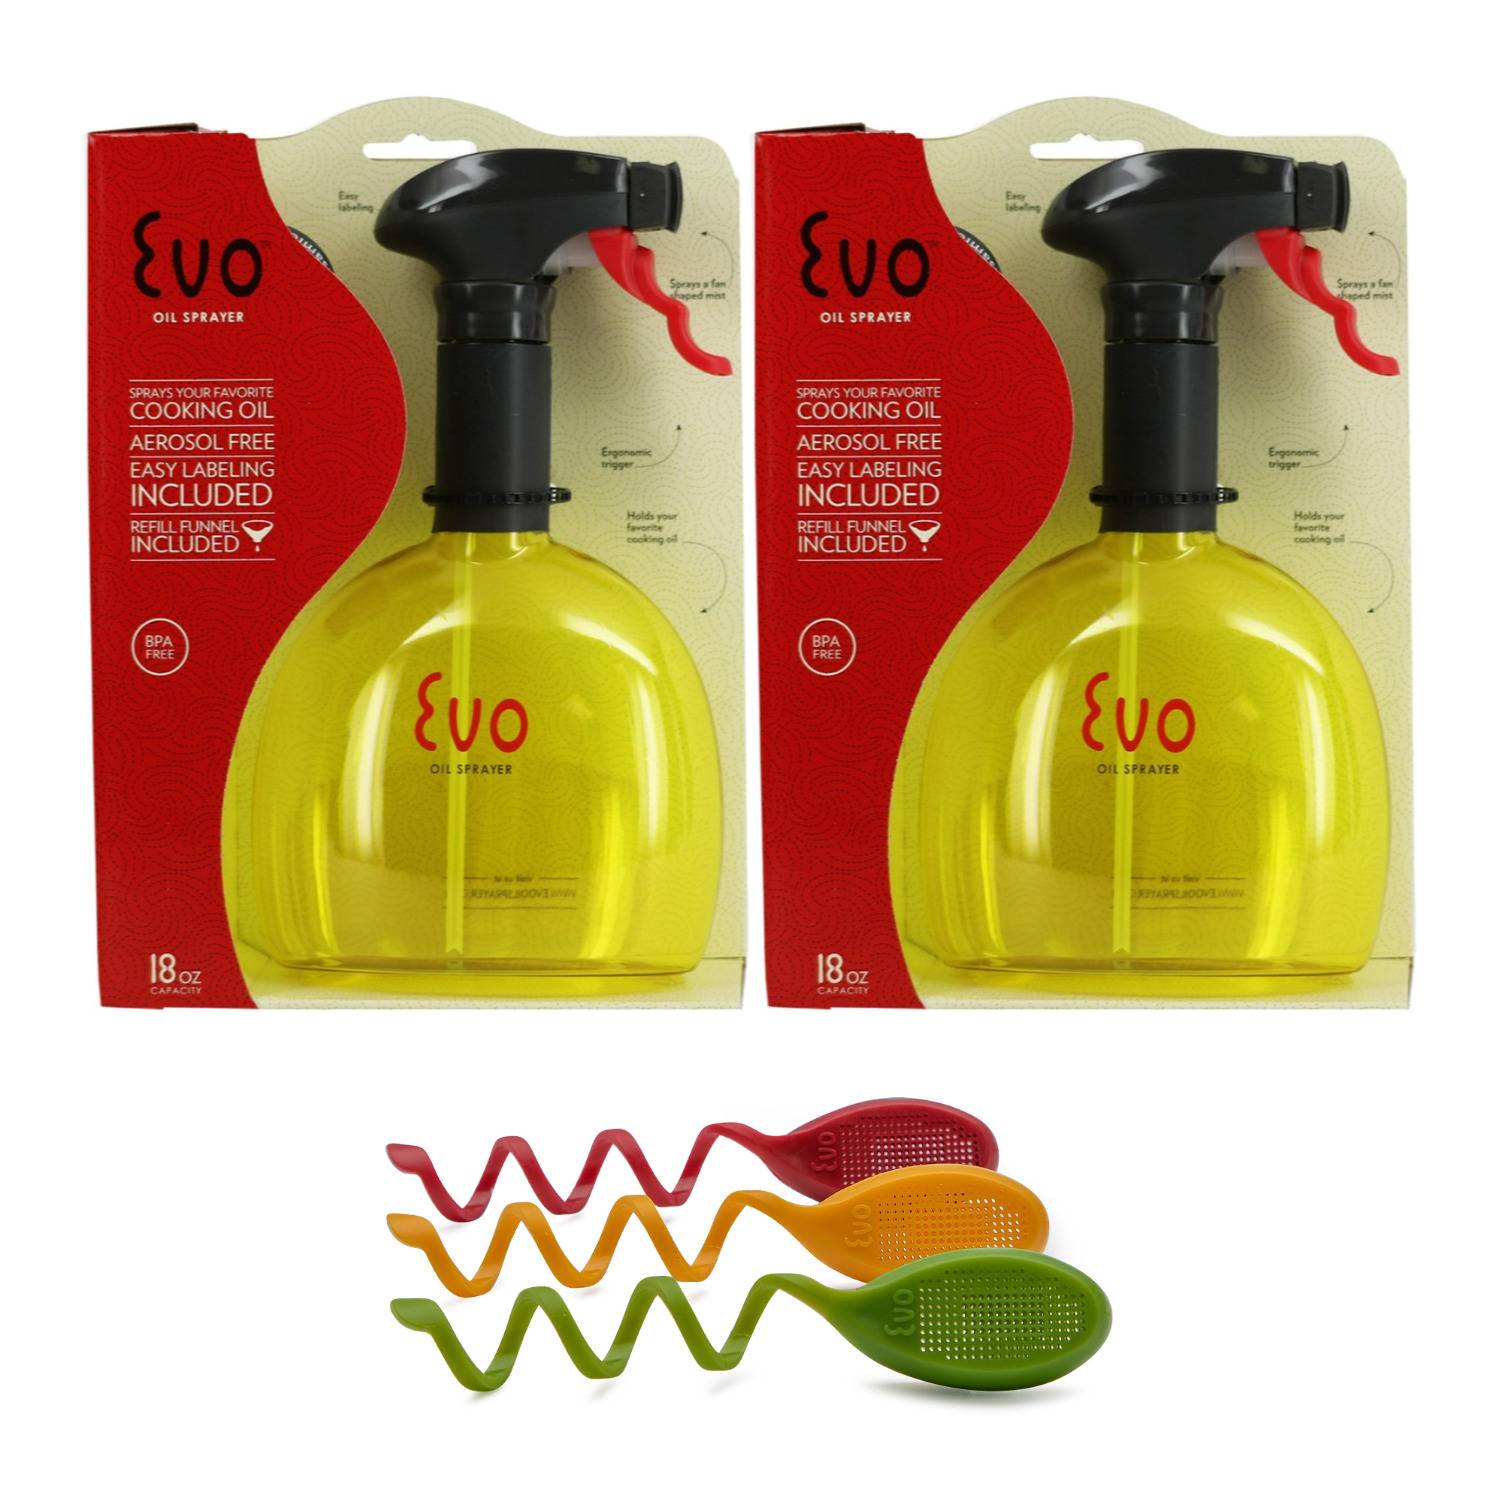 Evo Non-Aerosol Oil Sprayer (Flagship Yellow, 2-Pack) and Oil Sprayer Easy Slide On Flavor Filter